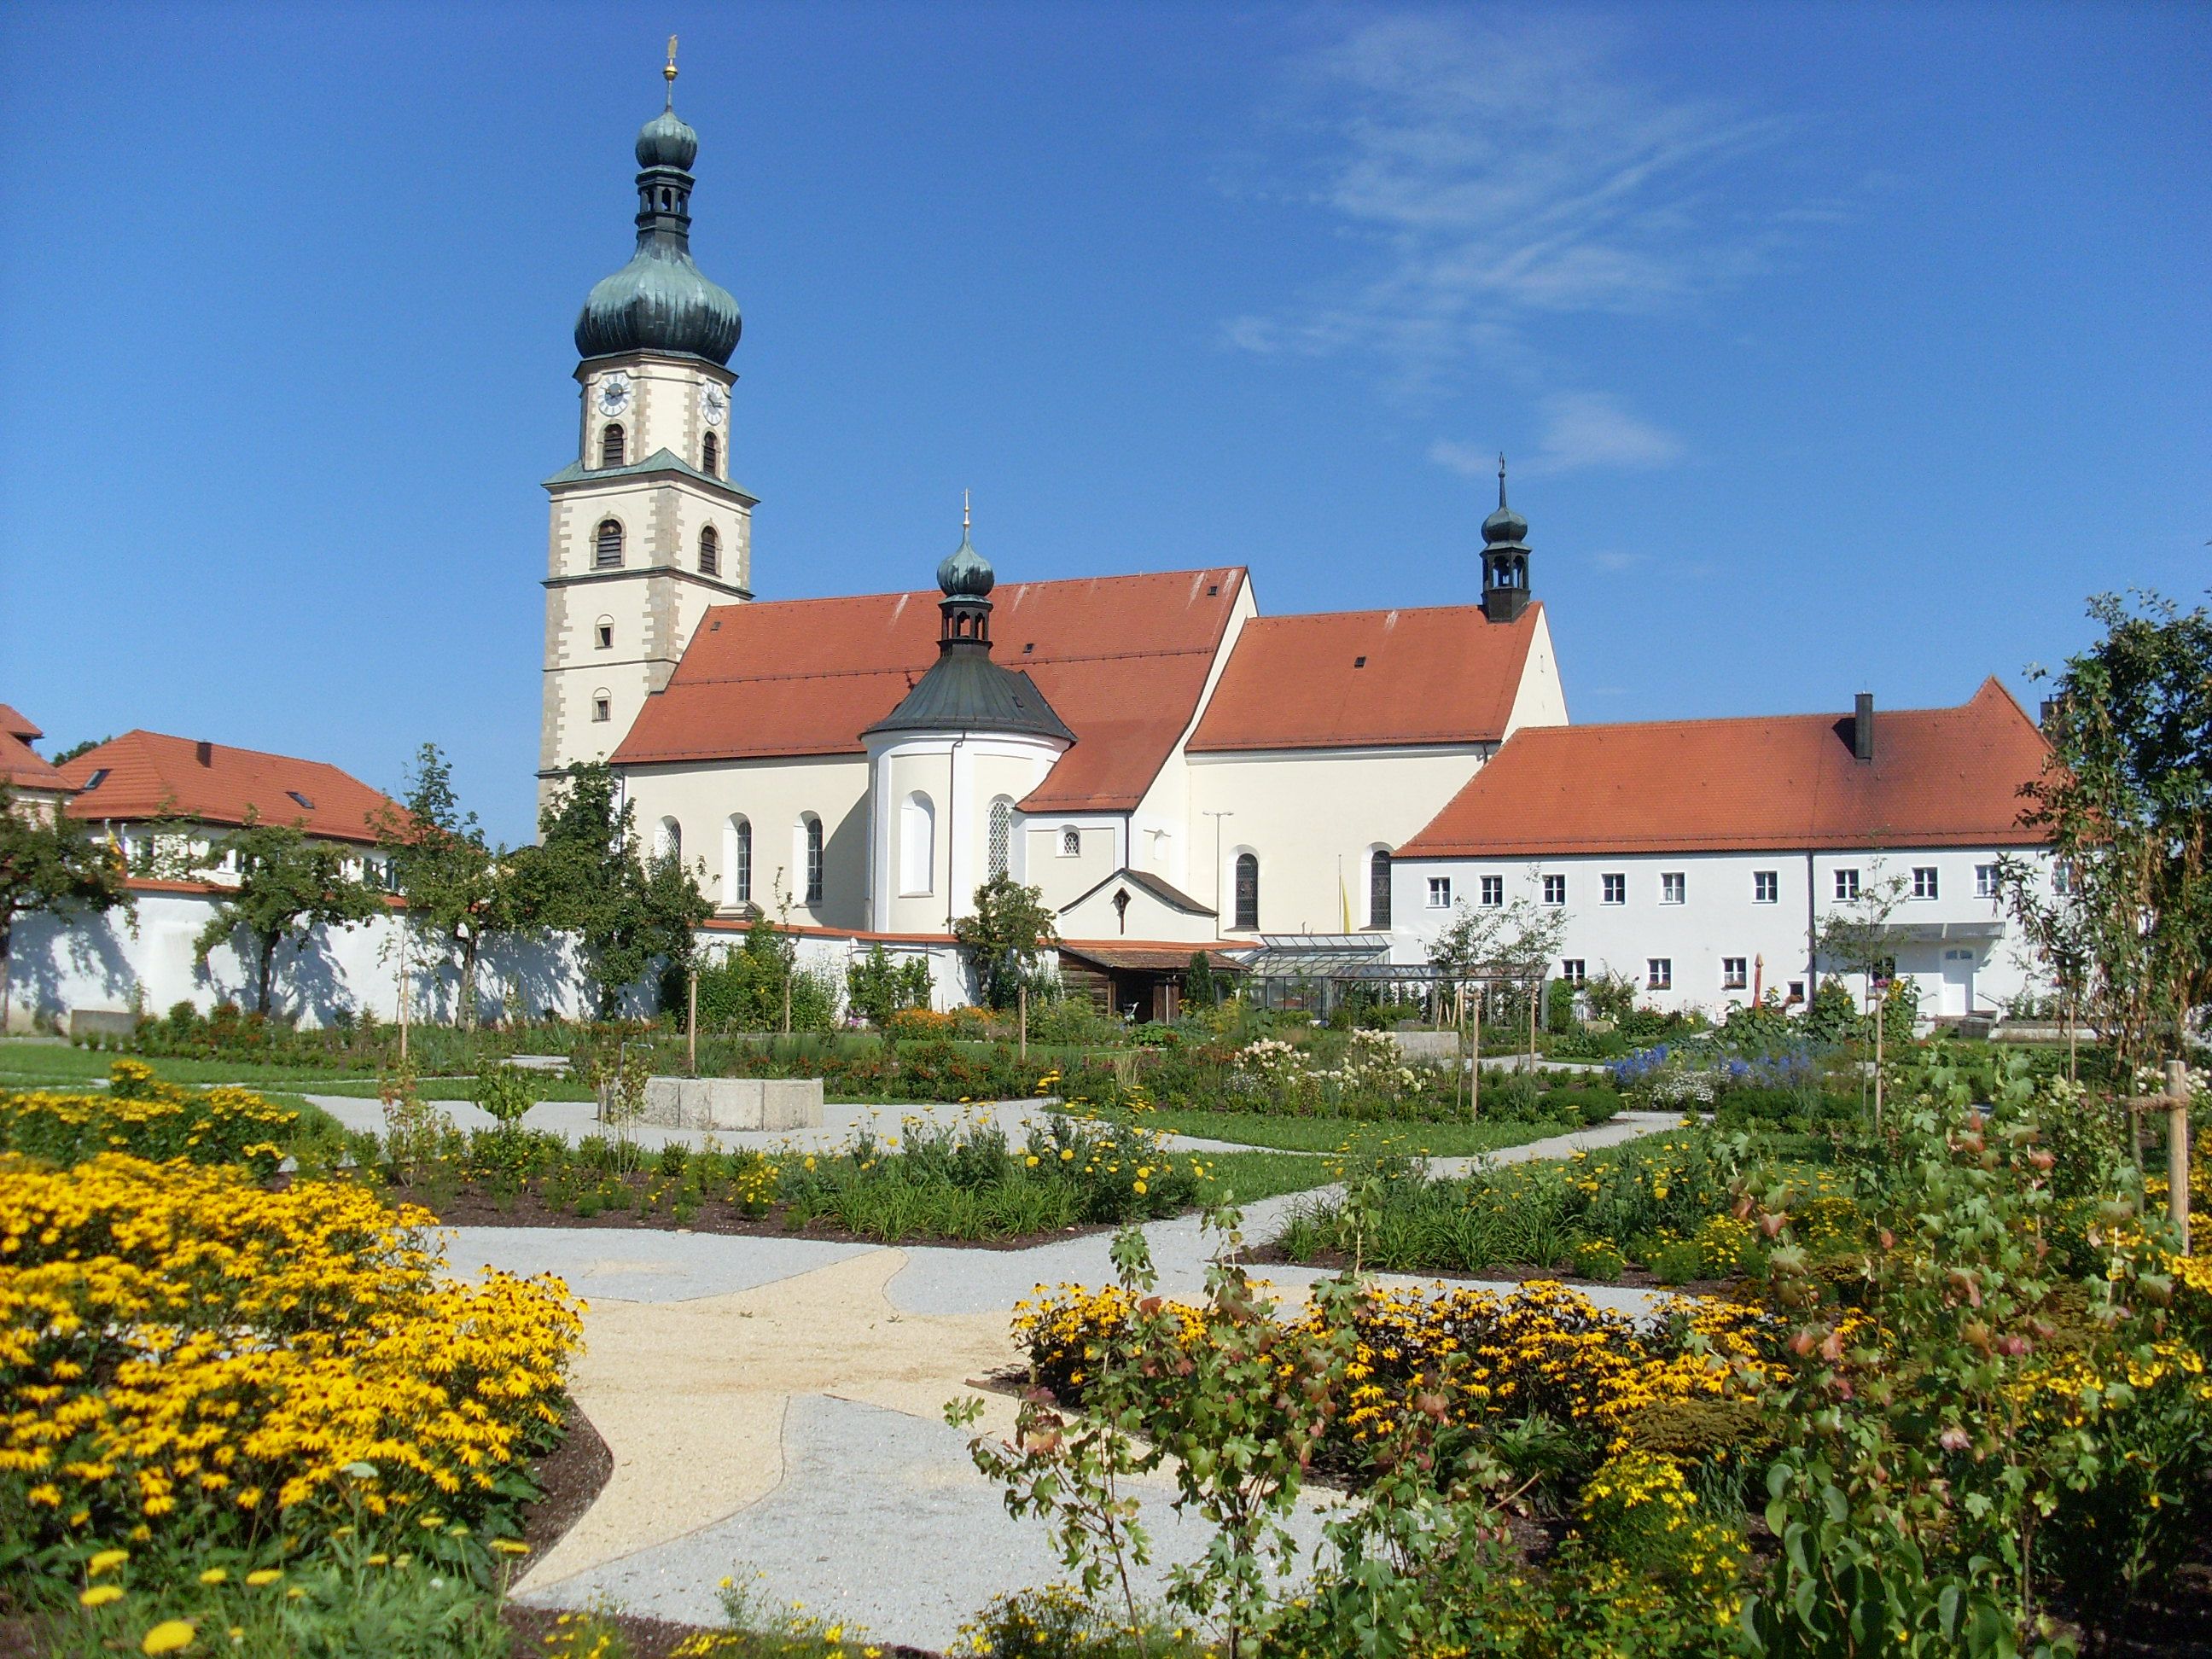 Franziskanerkloster mit Klostergarten, Neukirchen beim Heiligen Blut.
